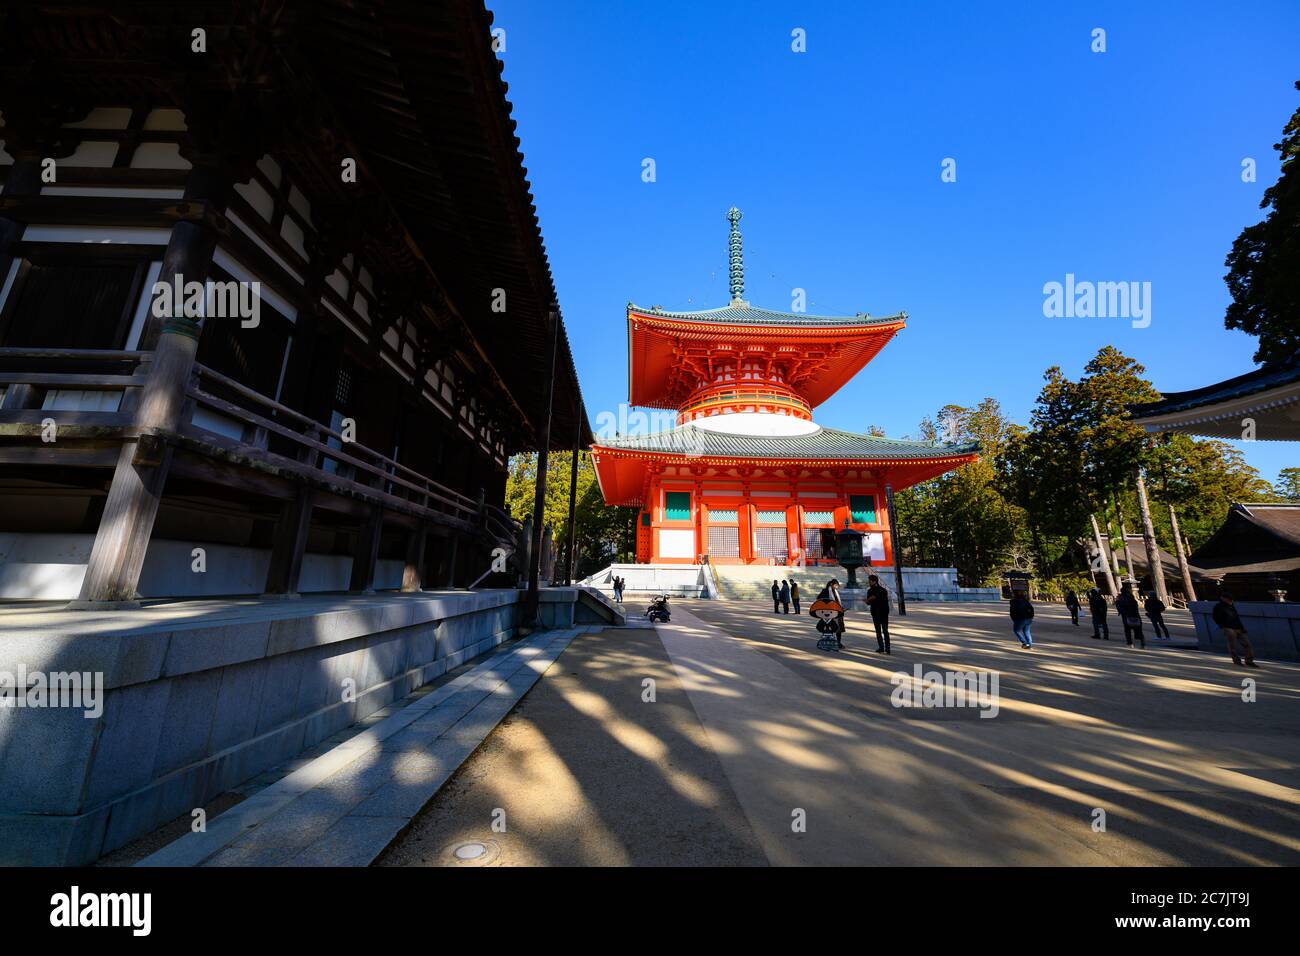 Wakayama / Japan - Dec 03 2018 : Konpon Daito Pagoda at Danjo Garan Temple on Mt. Koya (Koyasan) in Wakayama Prefecture, Japan Stock Photo